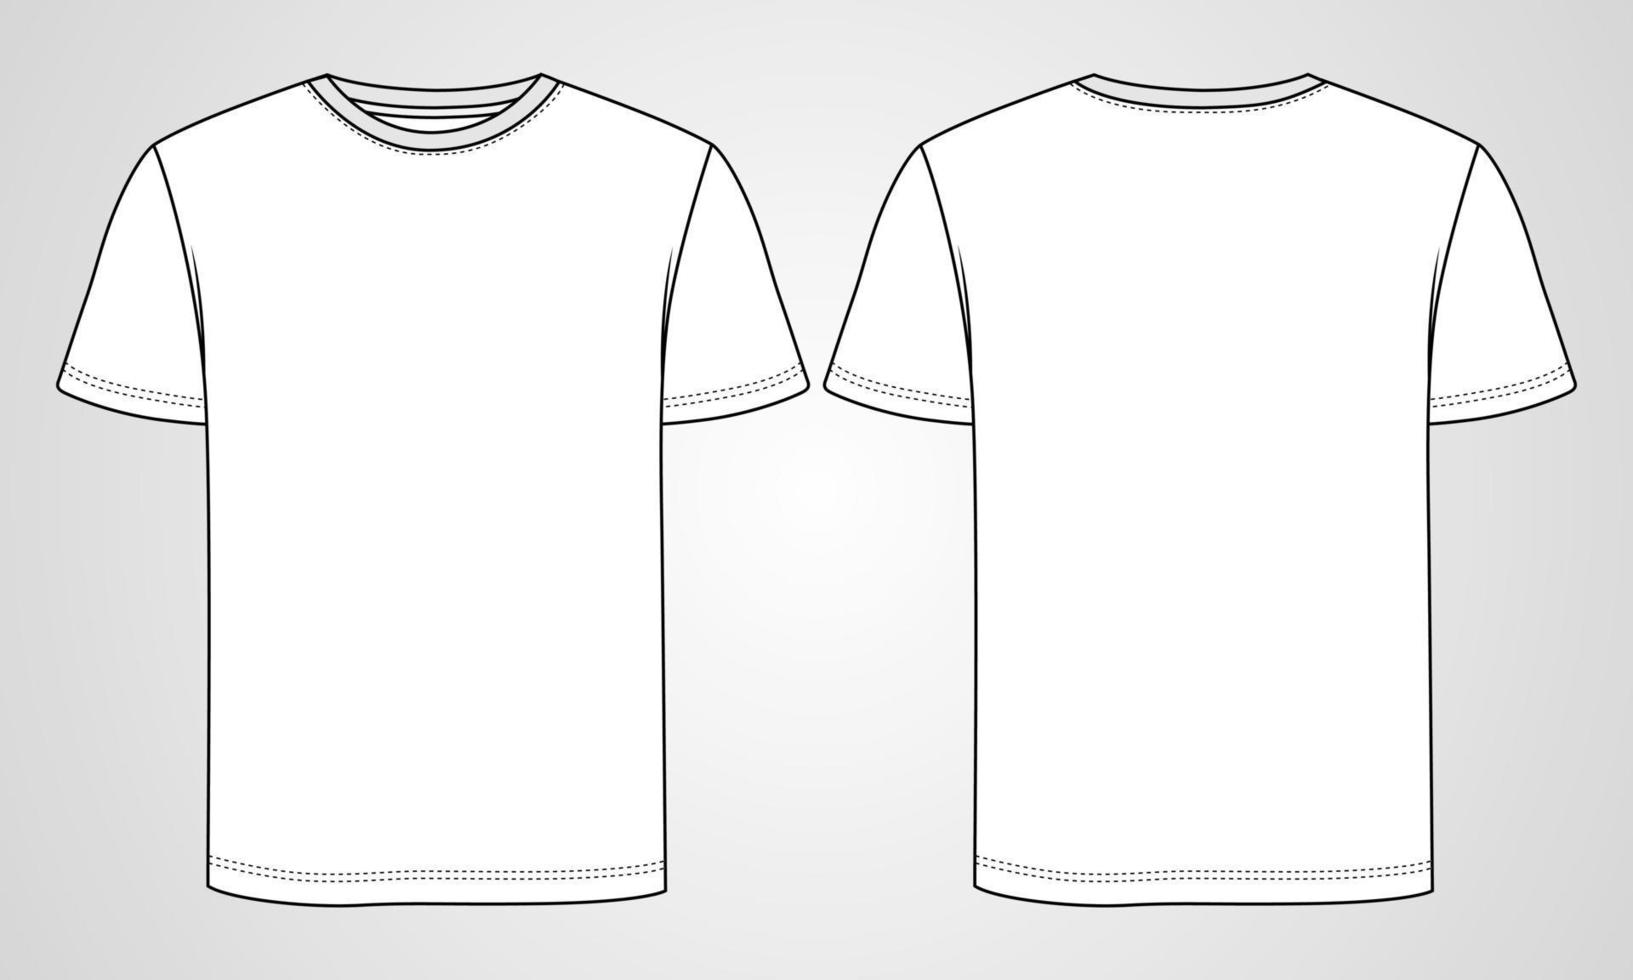 camiseta básica de manga curta geral técnica de moda plana esboço ilustração vetorial modelo vistas dianteiras e traseiras. roupas de vestuário mock up para homens e meninos. vetor